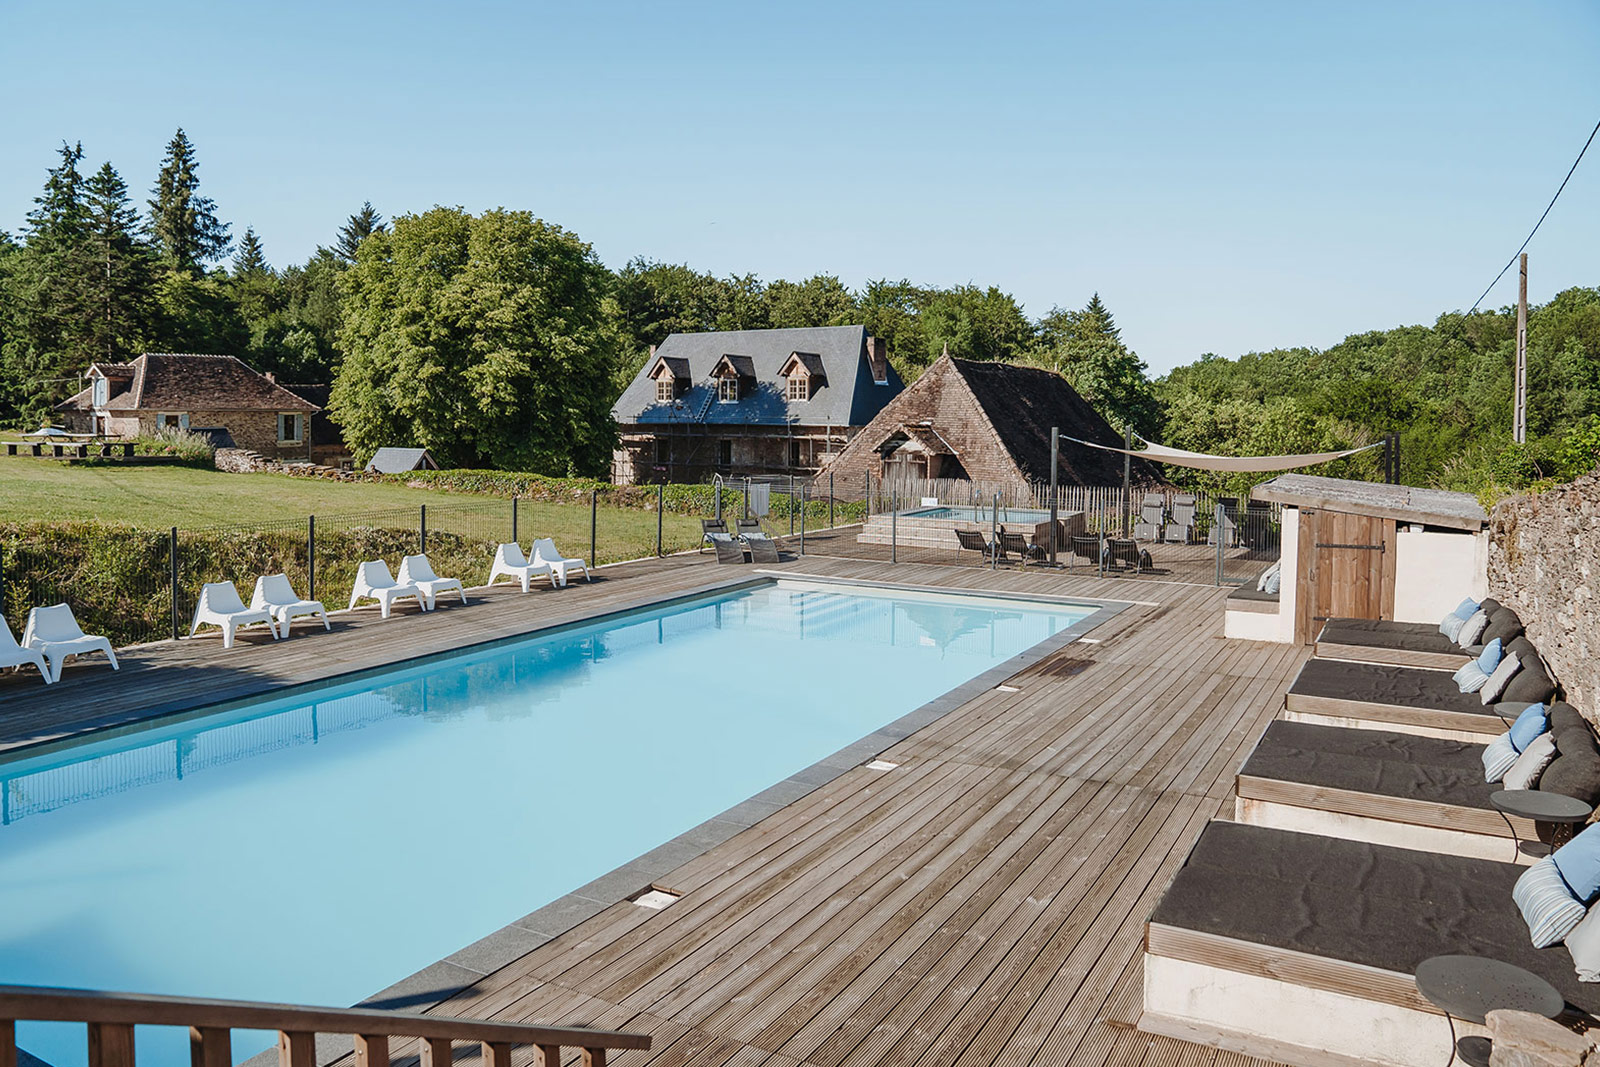 Sfeer vakantiehuis LOTT La Bastide buiten gezamenlijk zwembad op vakantiedomein in de Haute-Vienne